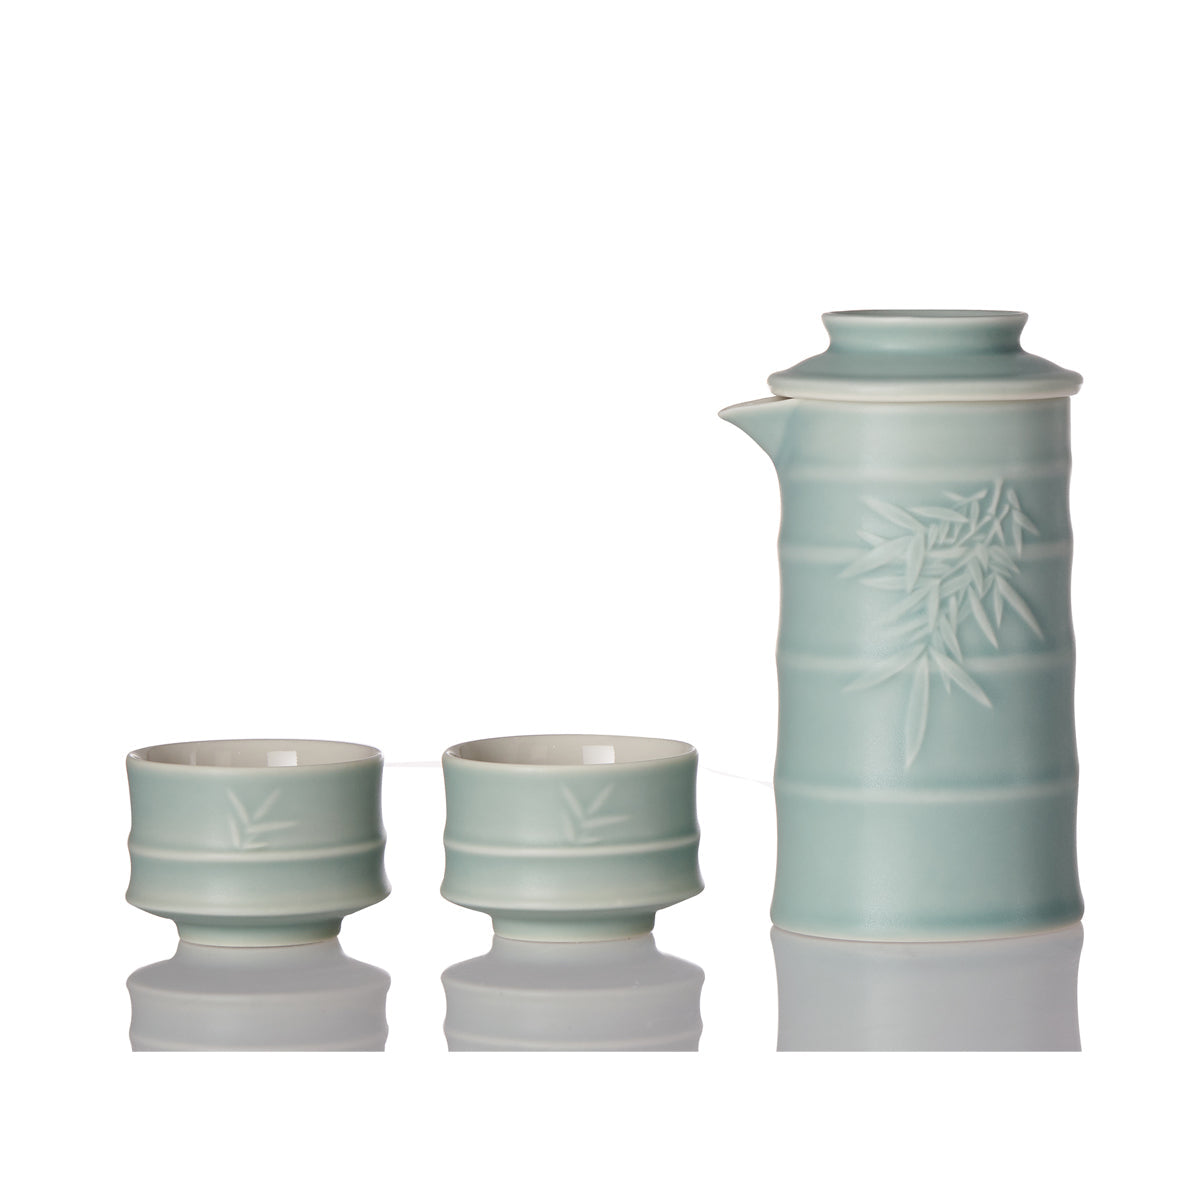 Bamboo Kung Fu Tea Set - 1 Pot with 2 Cups, Ceramics -3